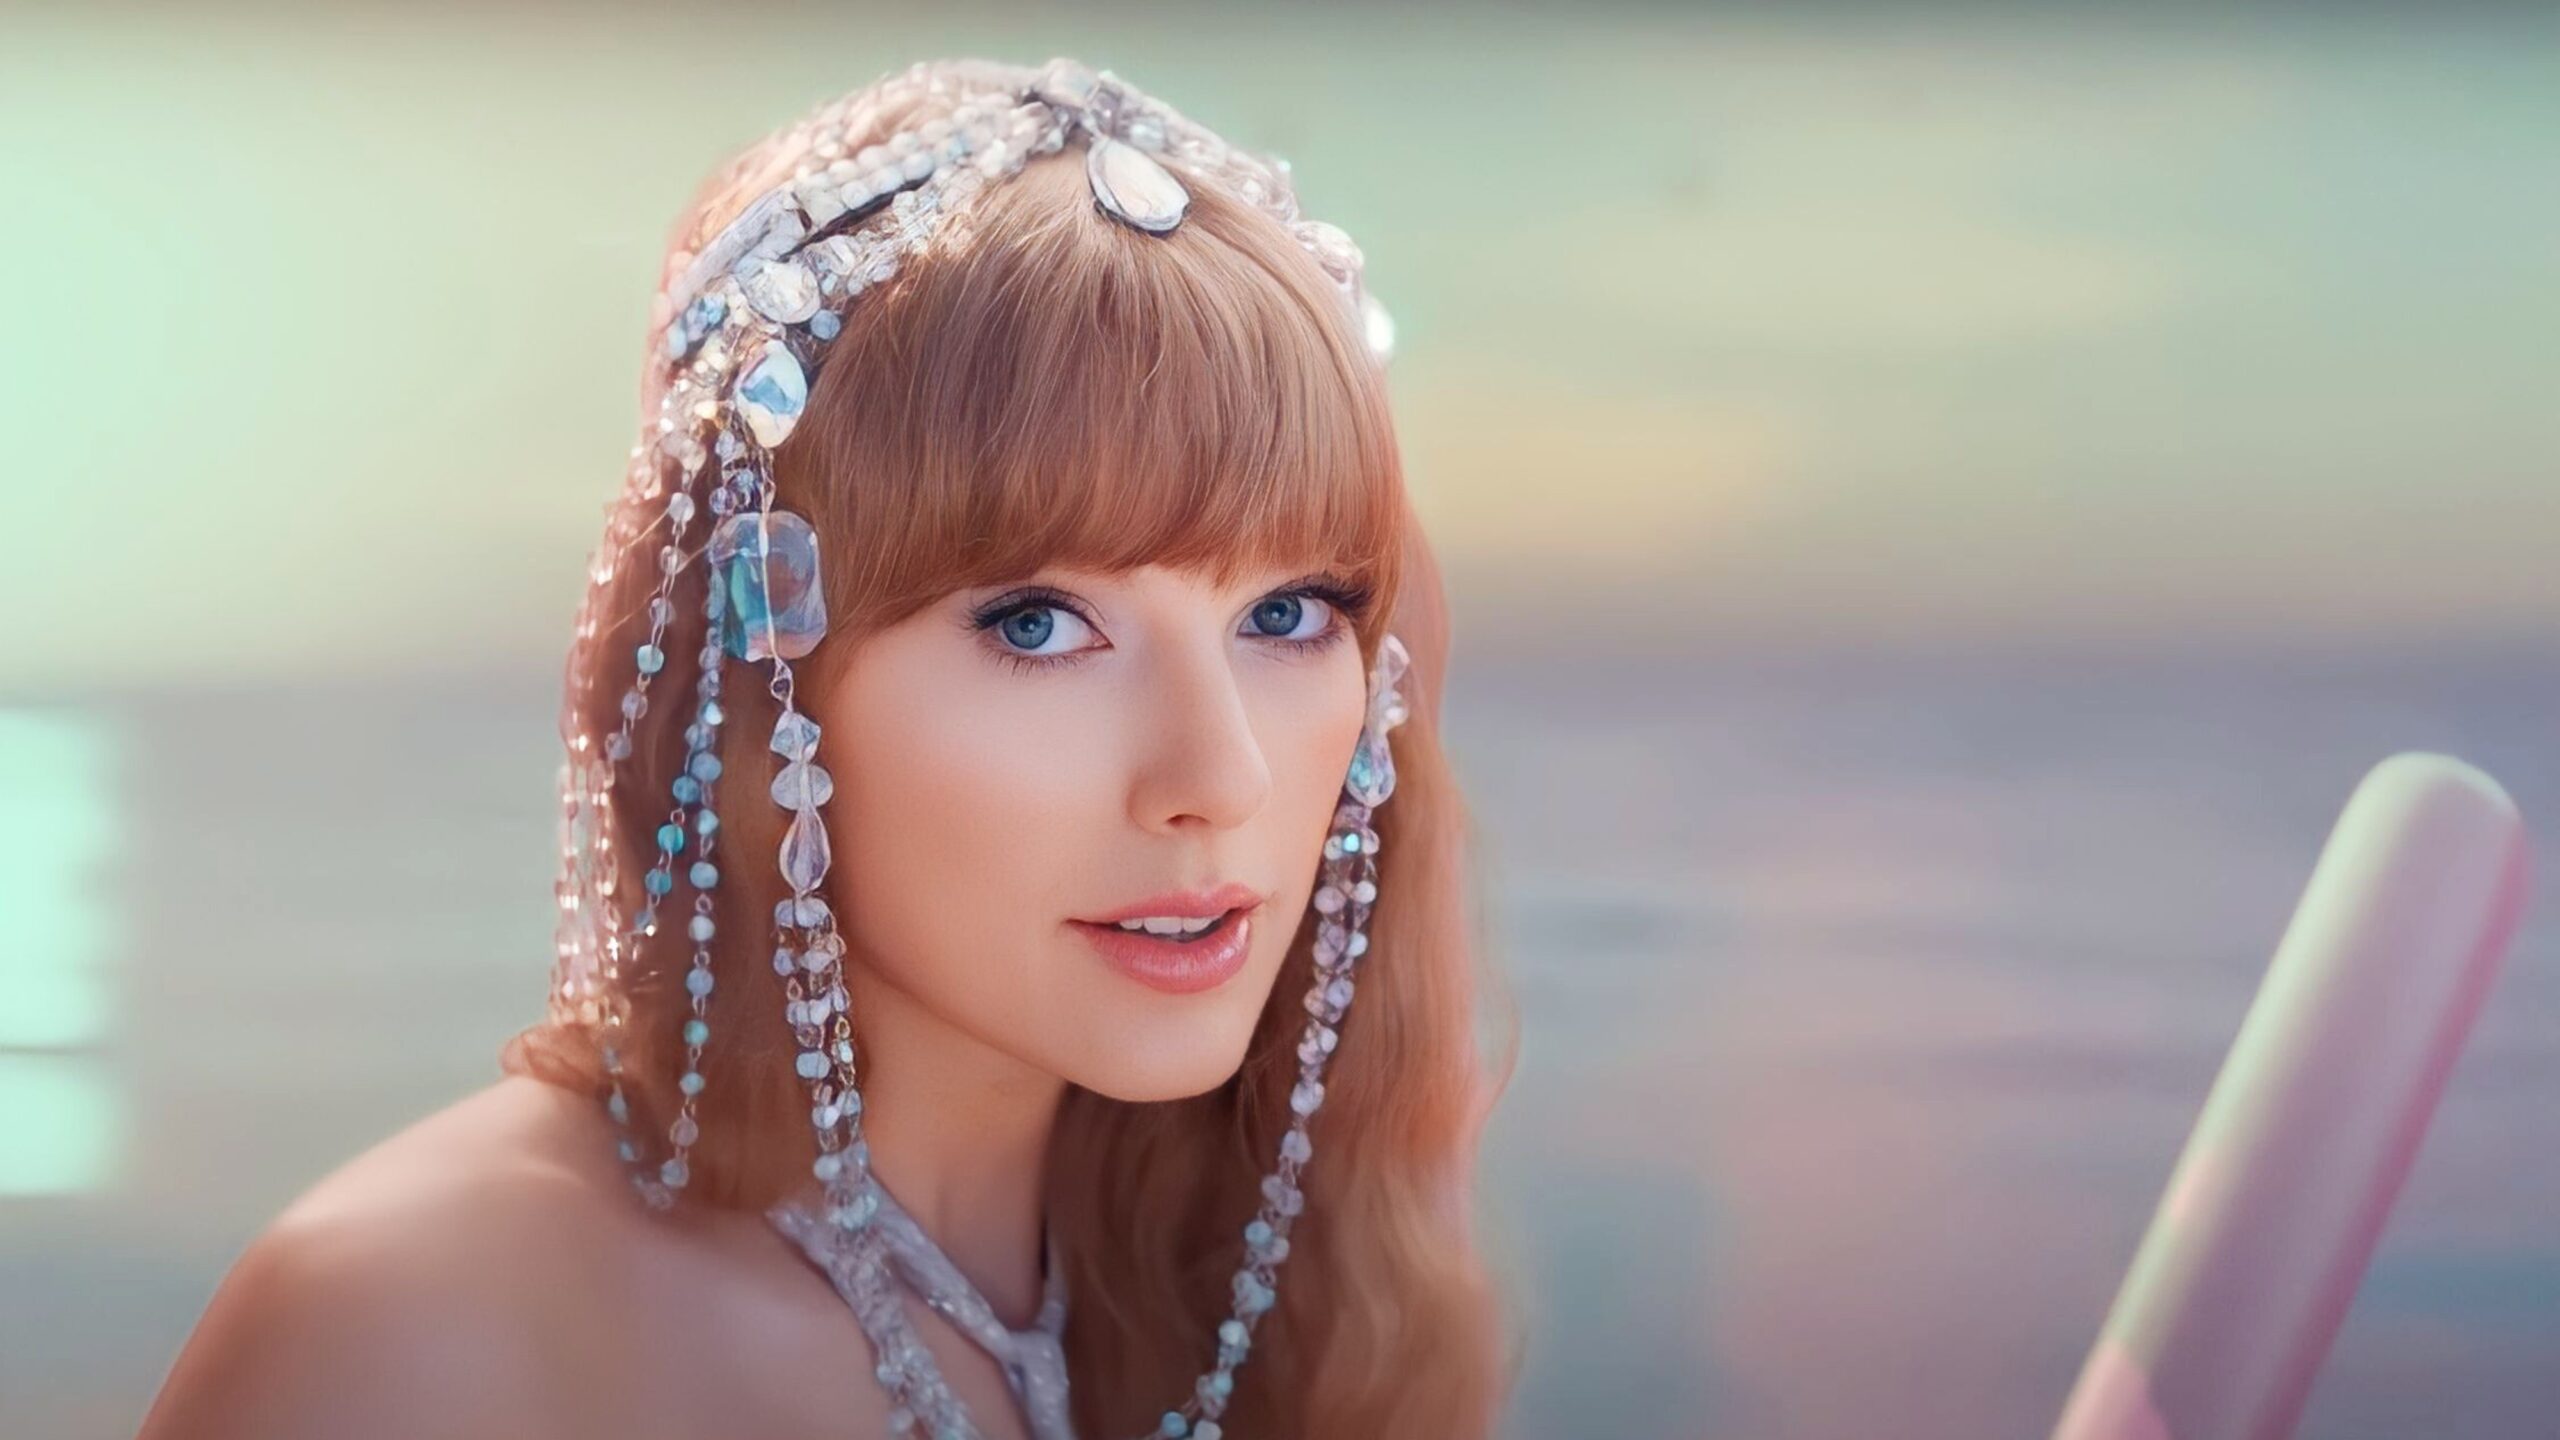 Η Taylor Swift με εντυπωσιακή δημιουργία Σήλια Κριθαριώτη στο νέο της video clip